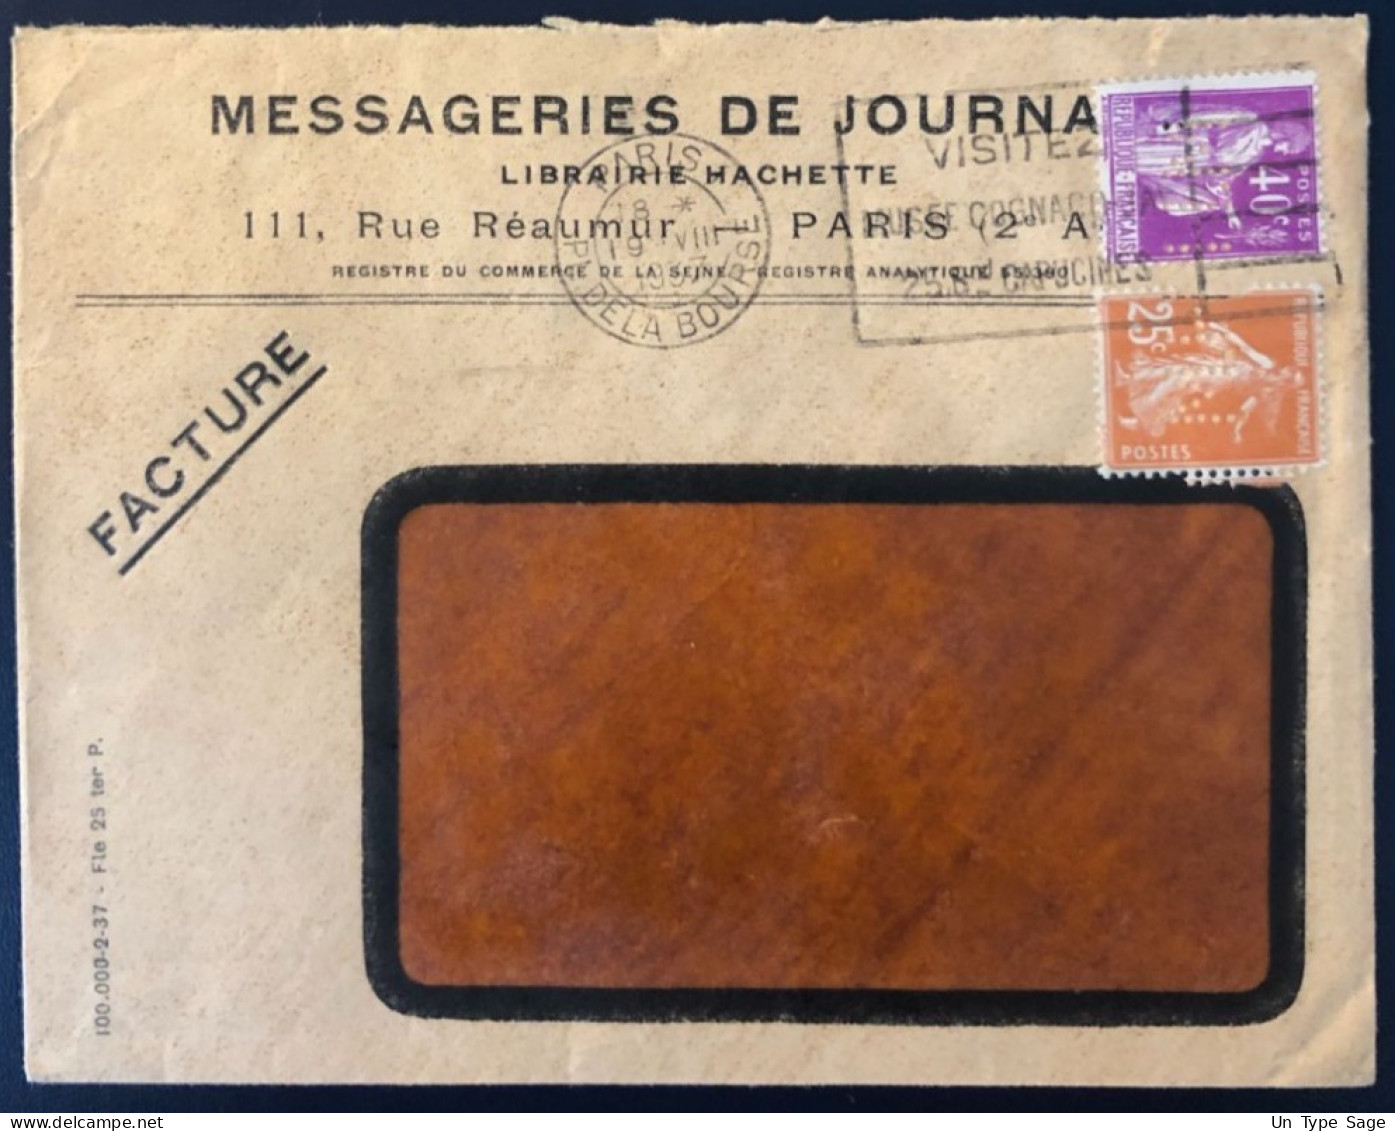 France, Divers Sur Enveloppe, Perforé MESSAGERIES DE JOURNAUX 1937  - (B1710) - Covers & Documents